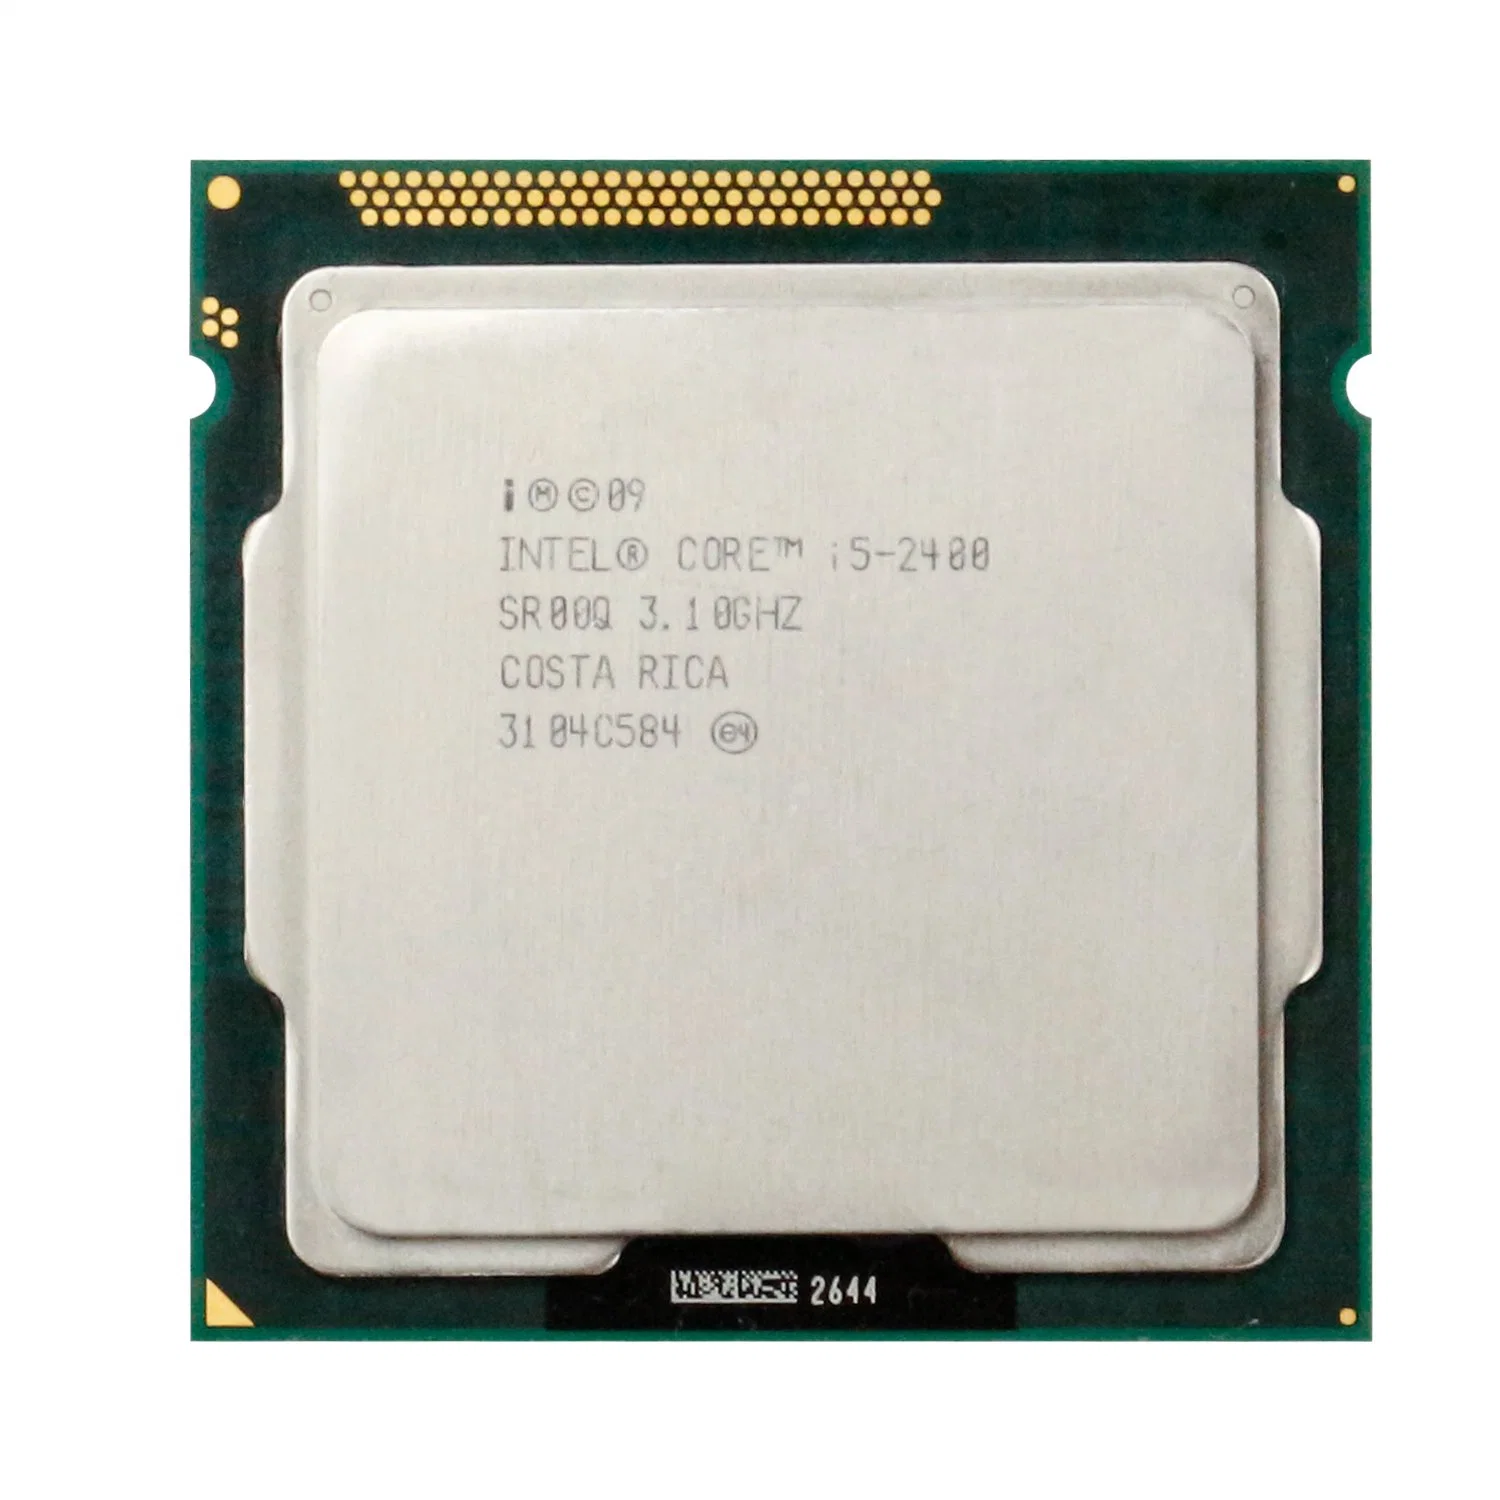 Procesador Intel Core 6m 95W-2400 3,1 GHz Quad-Core CPU i5 LGA 1155